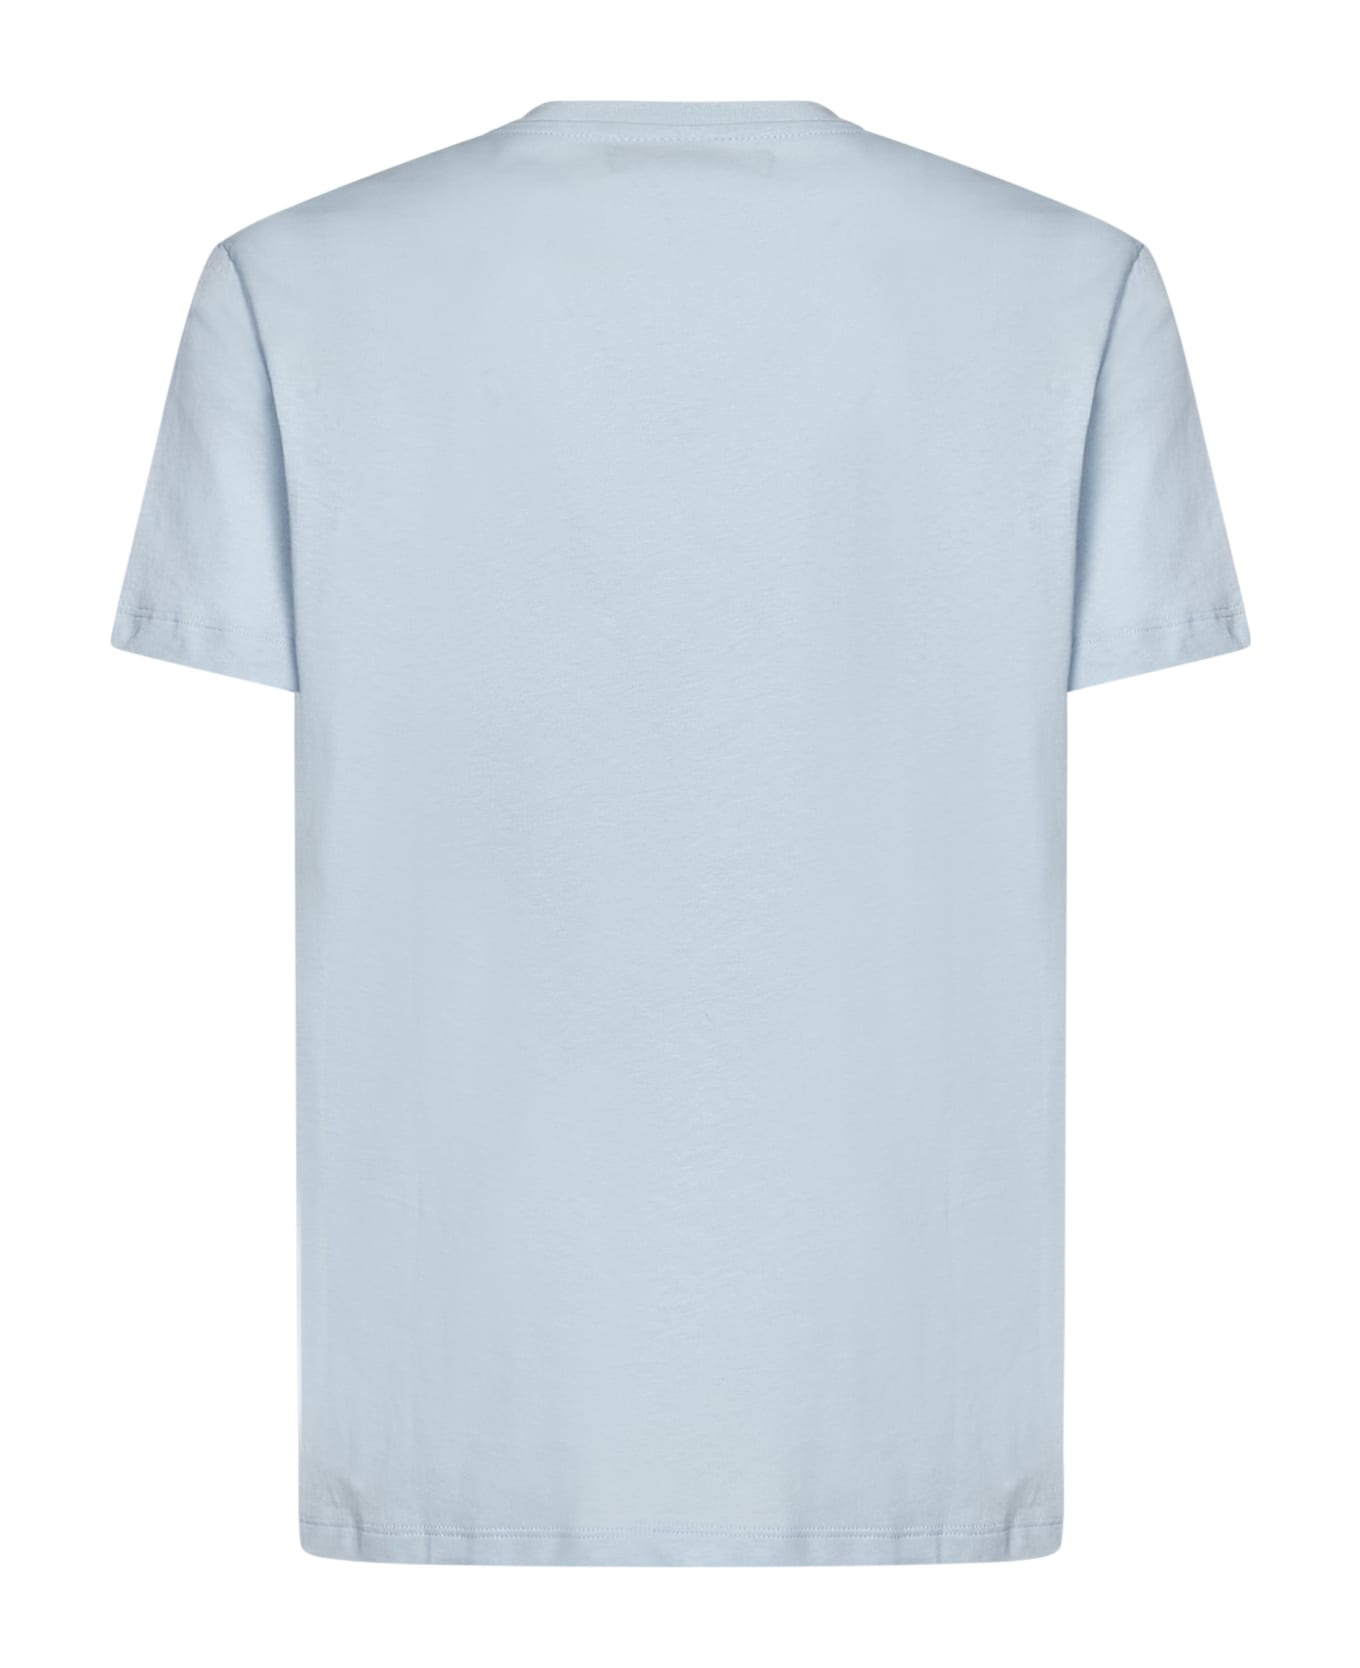 Vilebrequin White Sailing Boat T-shirt - azzurro